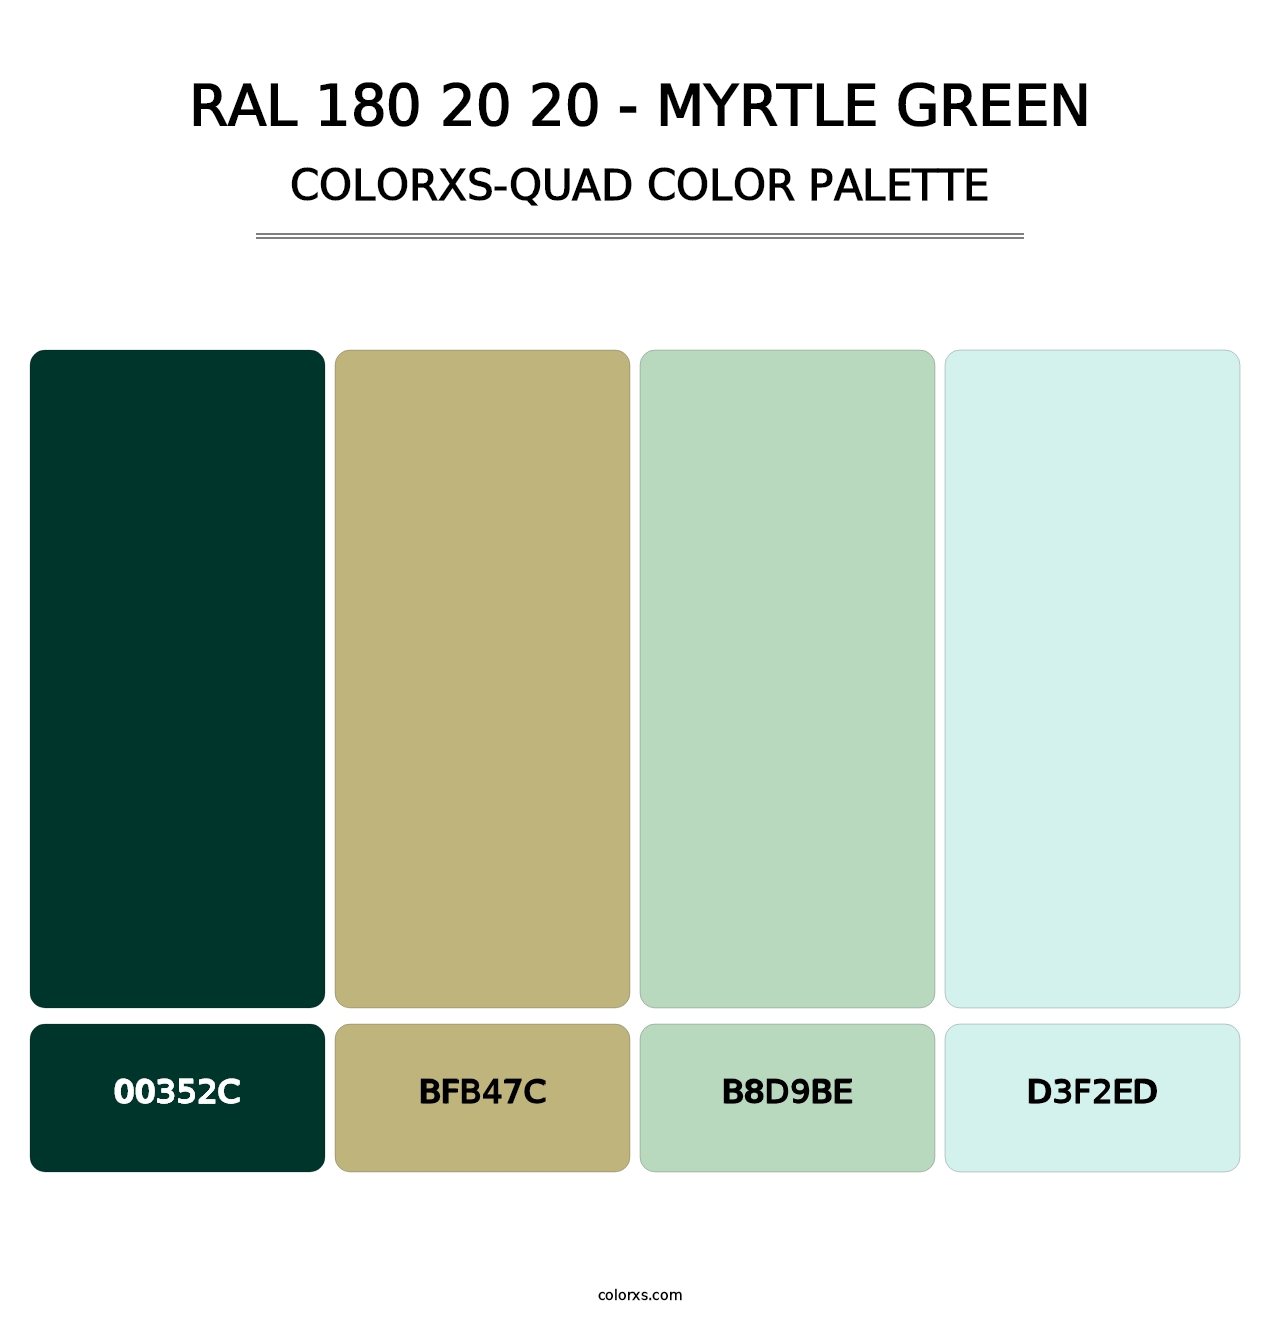 RAL 180 20 20 - Myrtle Green - Colorxs Quad Palette